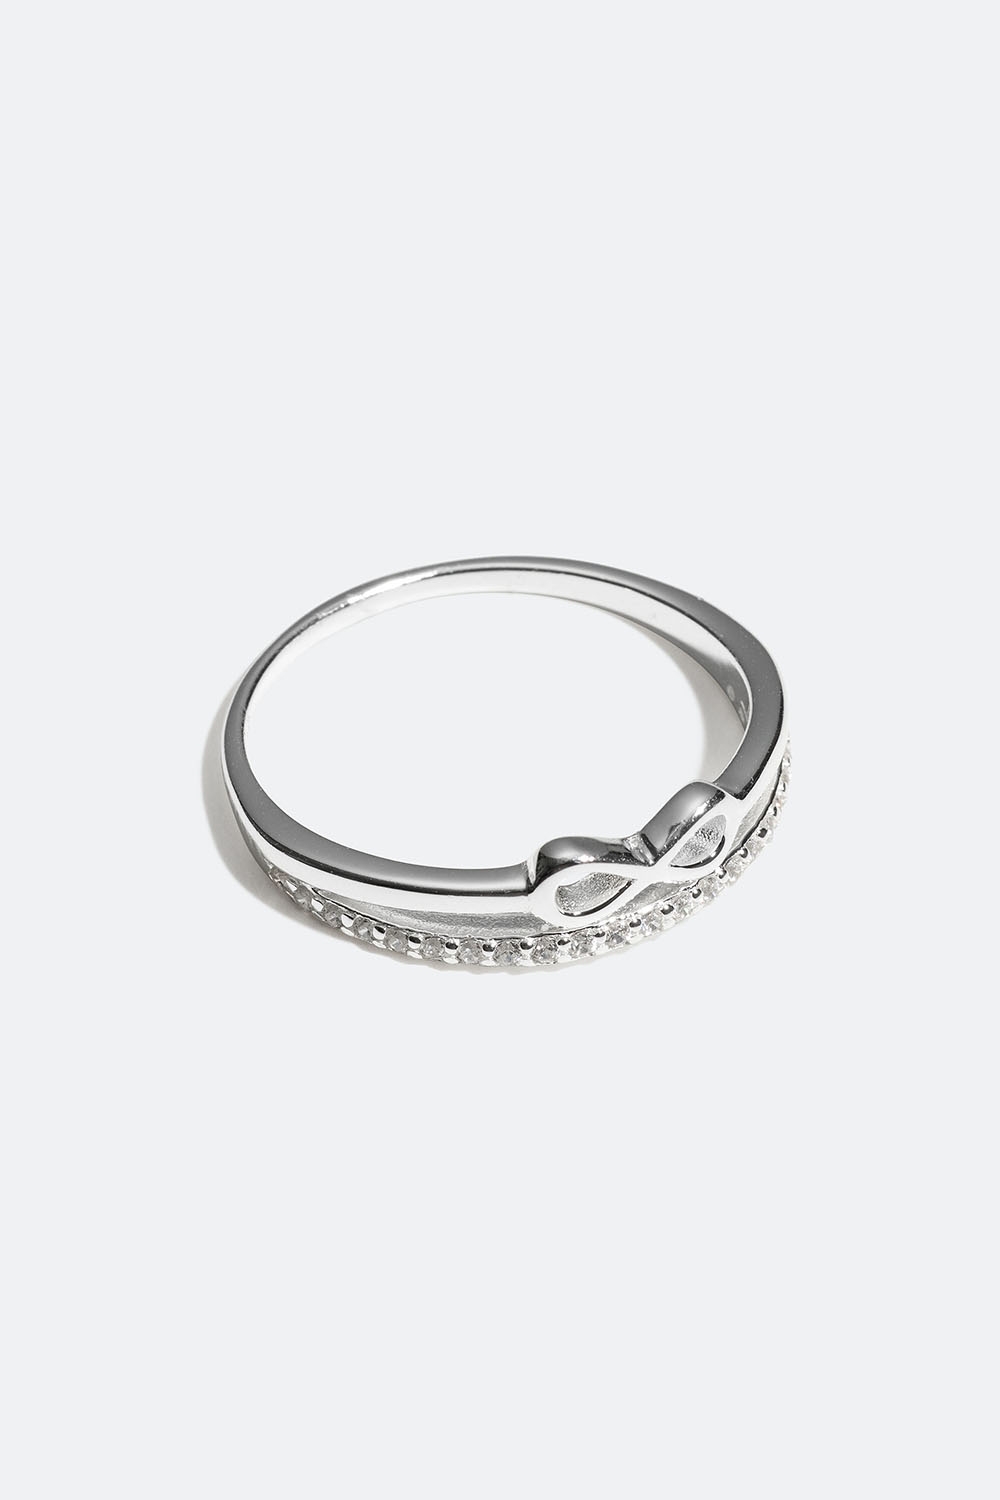 Ring i äkta silver med infinity-symbol i gruppen Äkta silver / Silverringar / Silver hos Glitter (55600070)